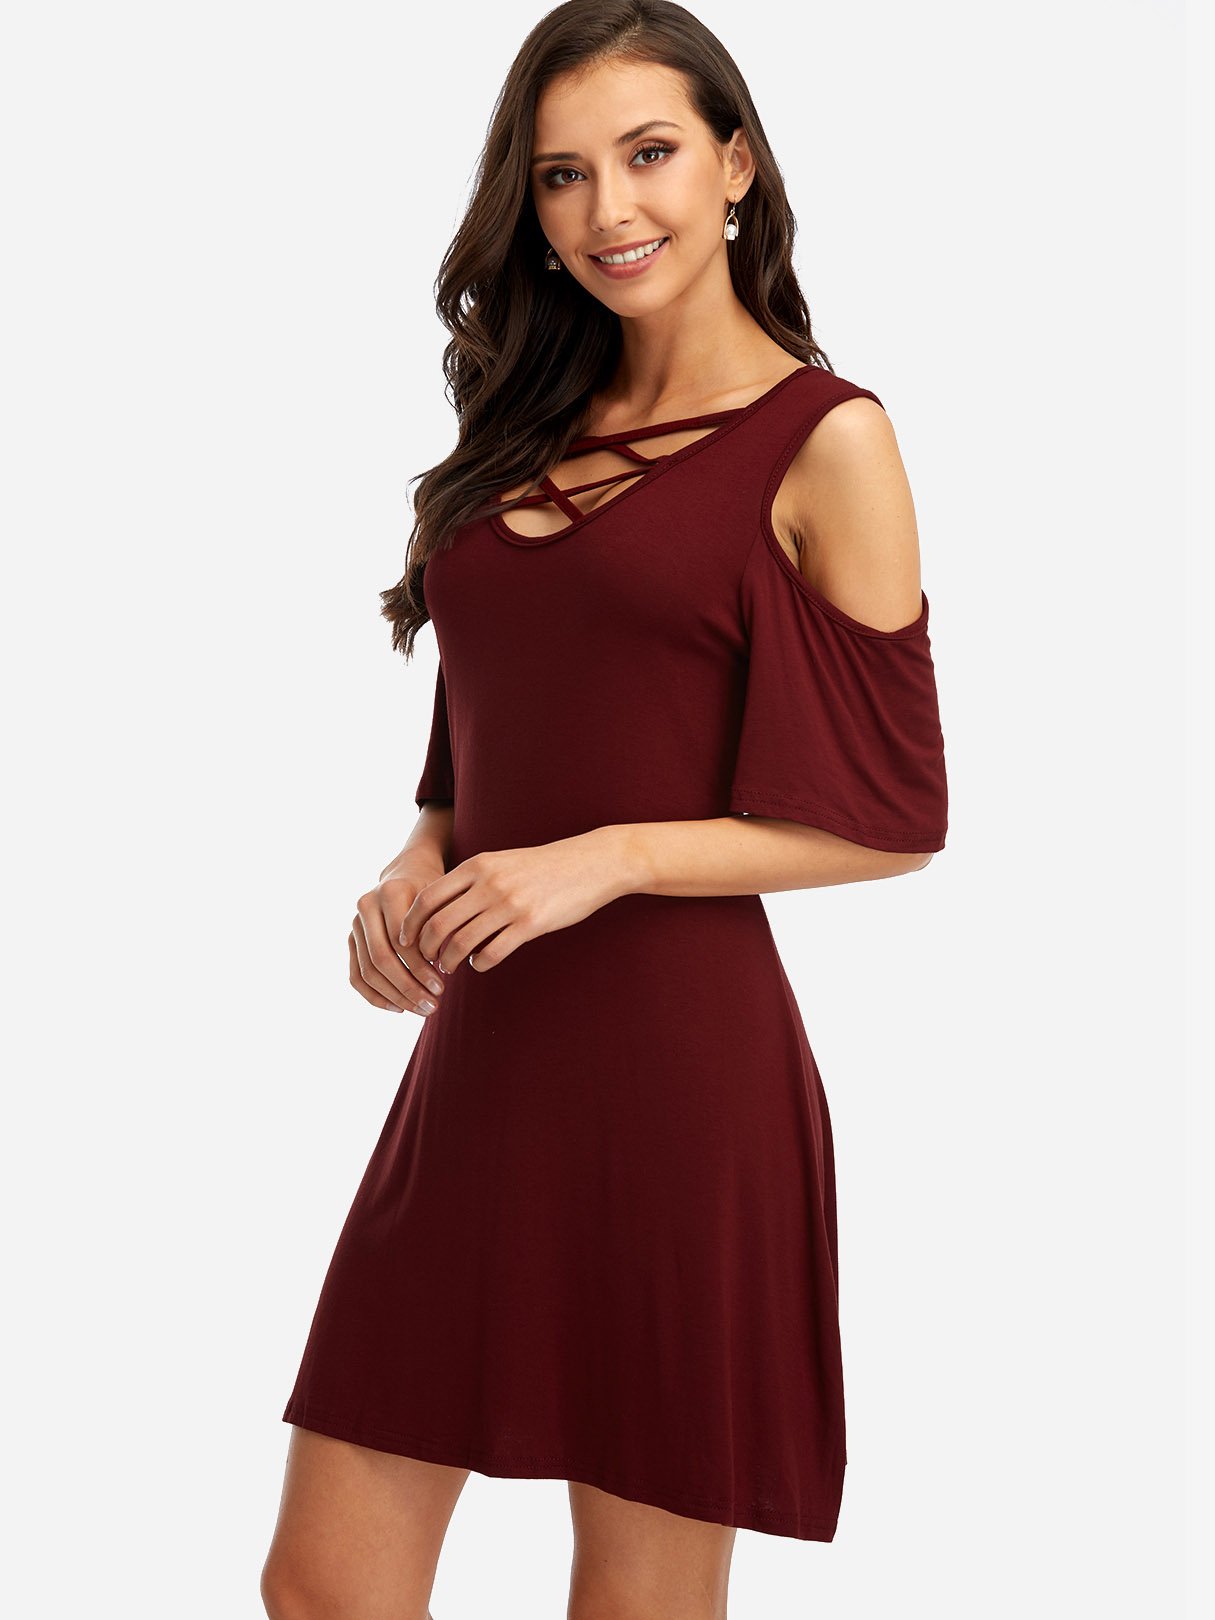 Wholesale V-Neck Cold Shoulder Short Sleeve Burgundy Mini Dress